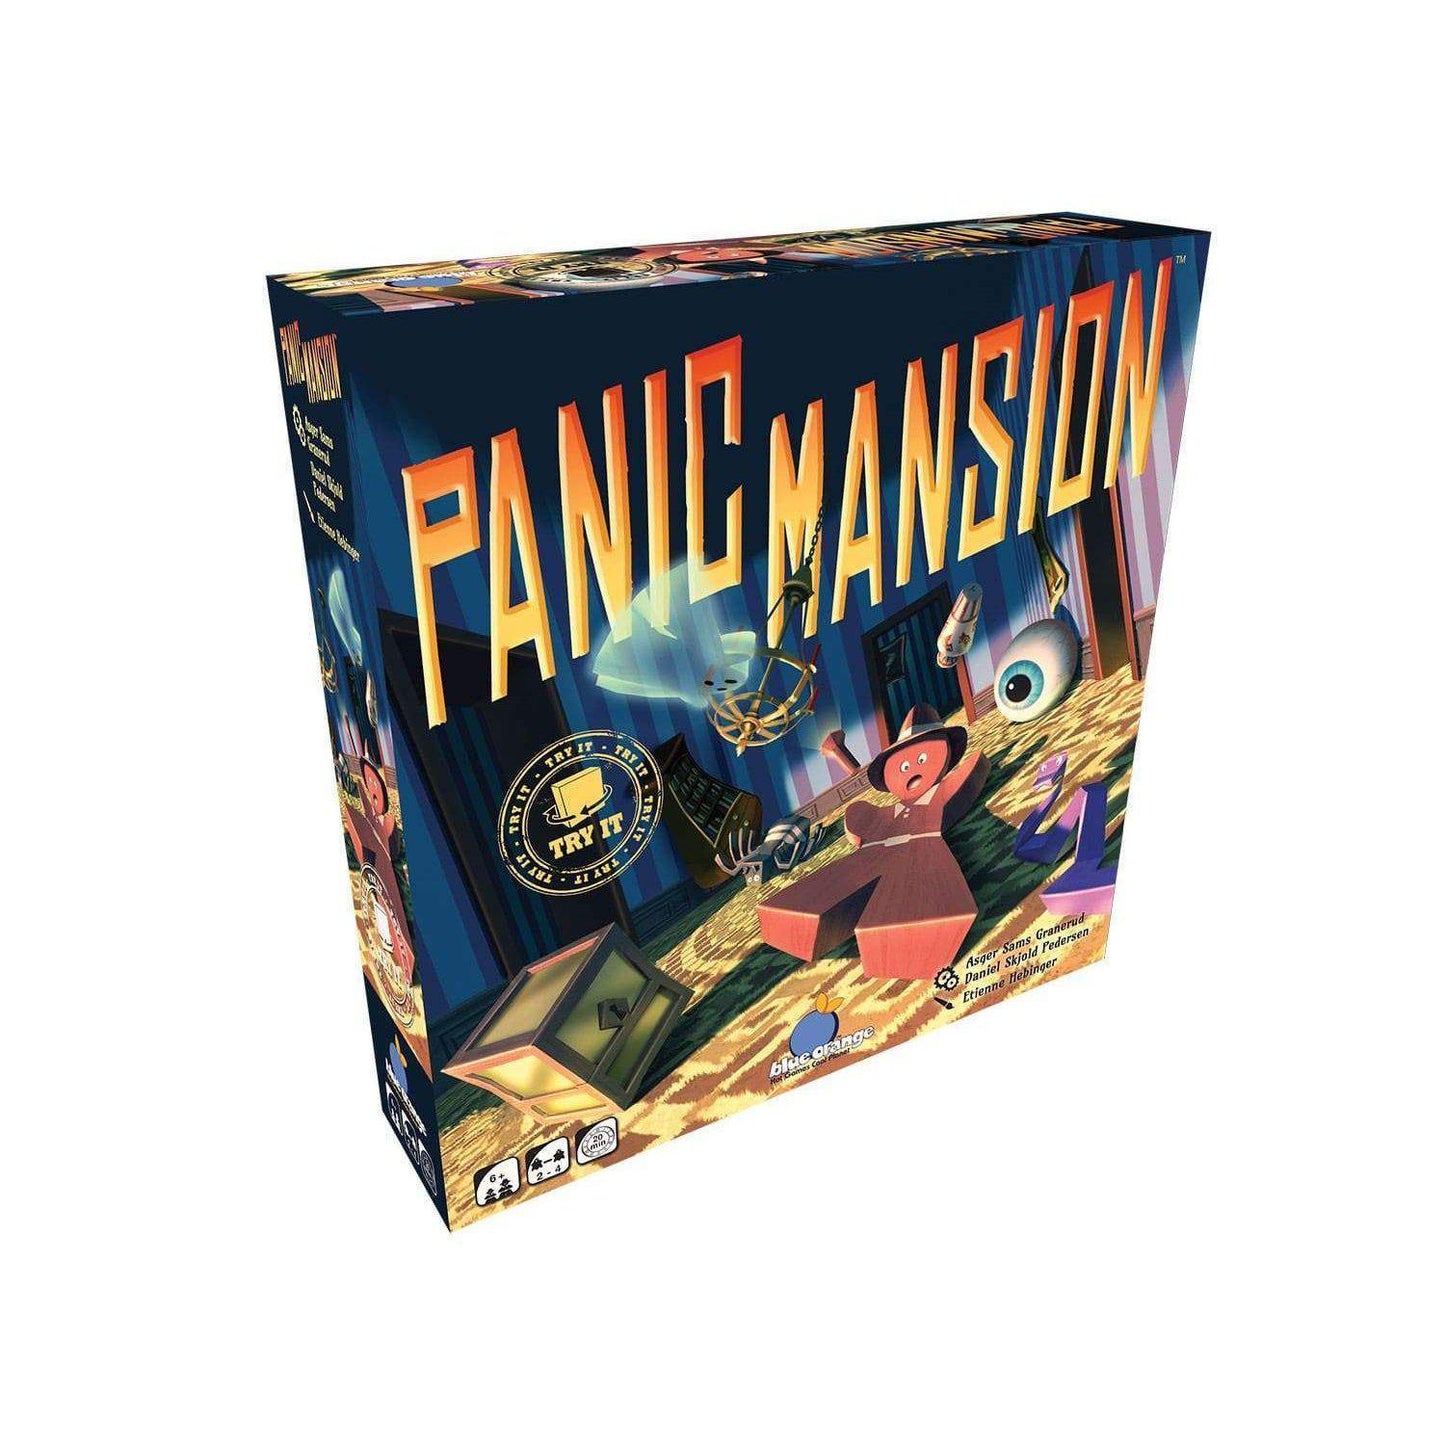 Panic Mansion-Blue Orange-1-Játszma.ro - A maradandó élmények boltja